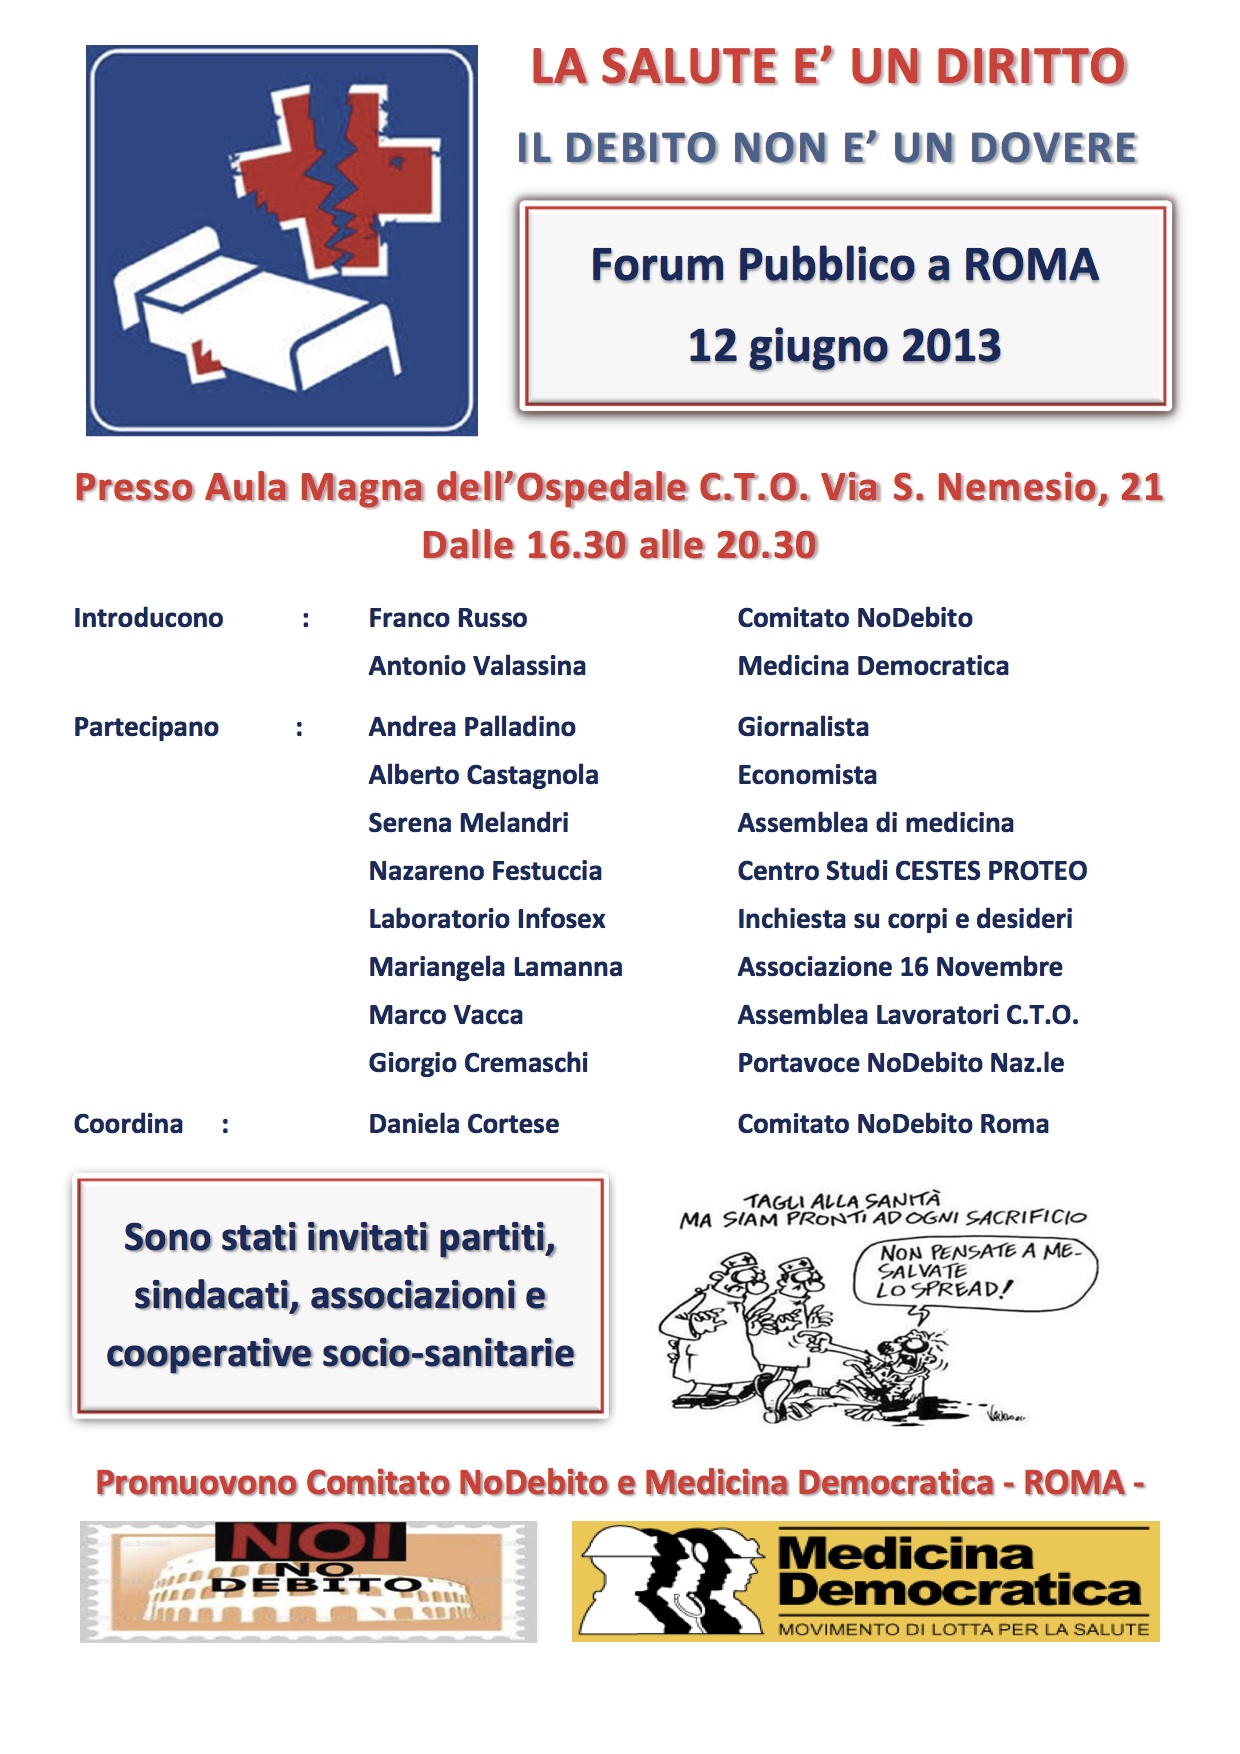 Si terrà a Roma un Forum pubblico  sulla Salute il 13 giugno presso l'Aula Magna dell’Ospedale C.T.O. Via S. Nemesio, 21 